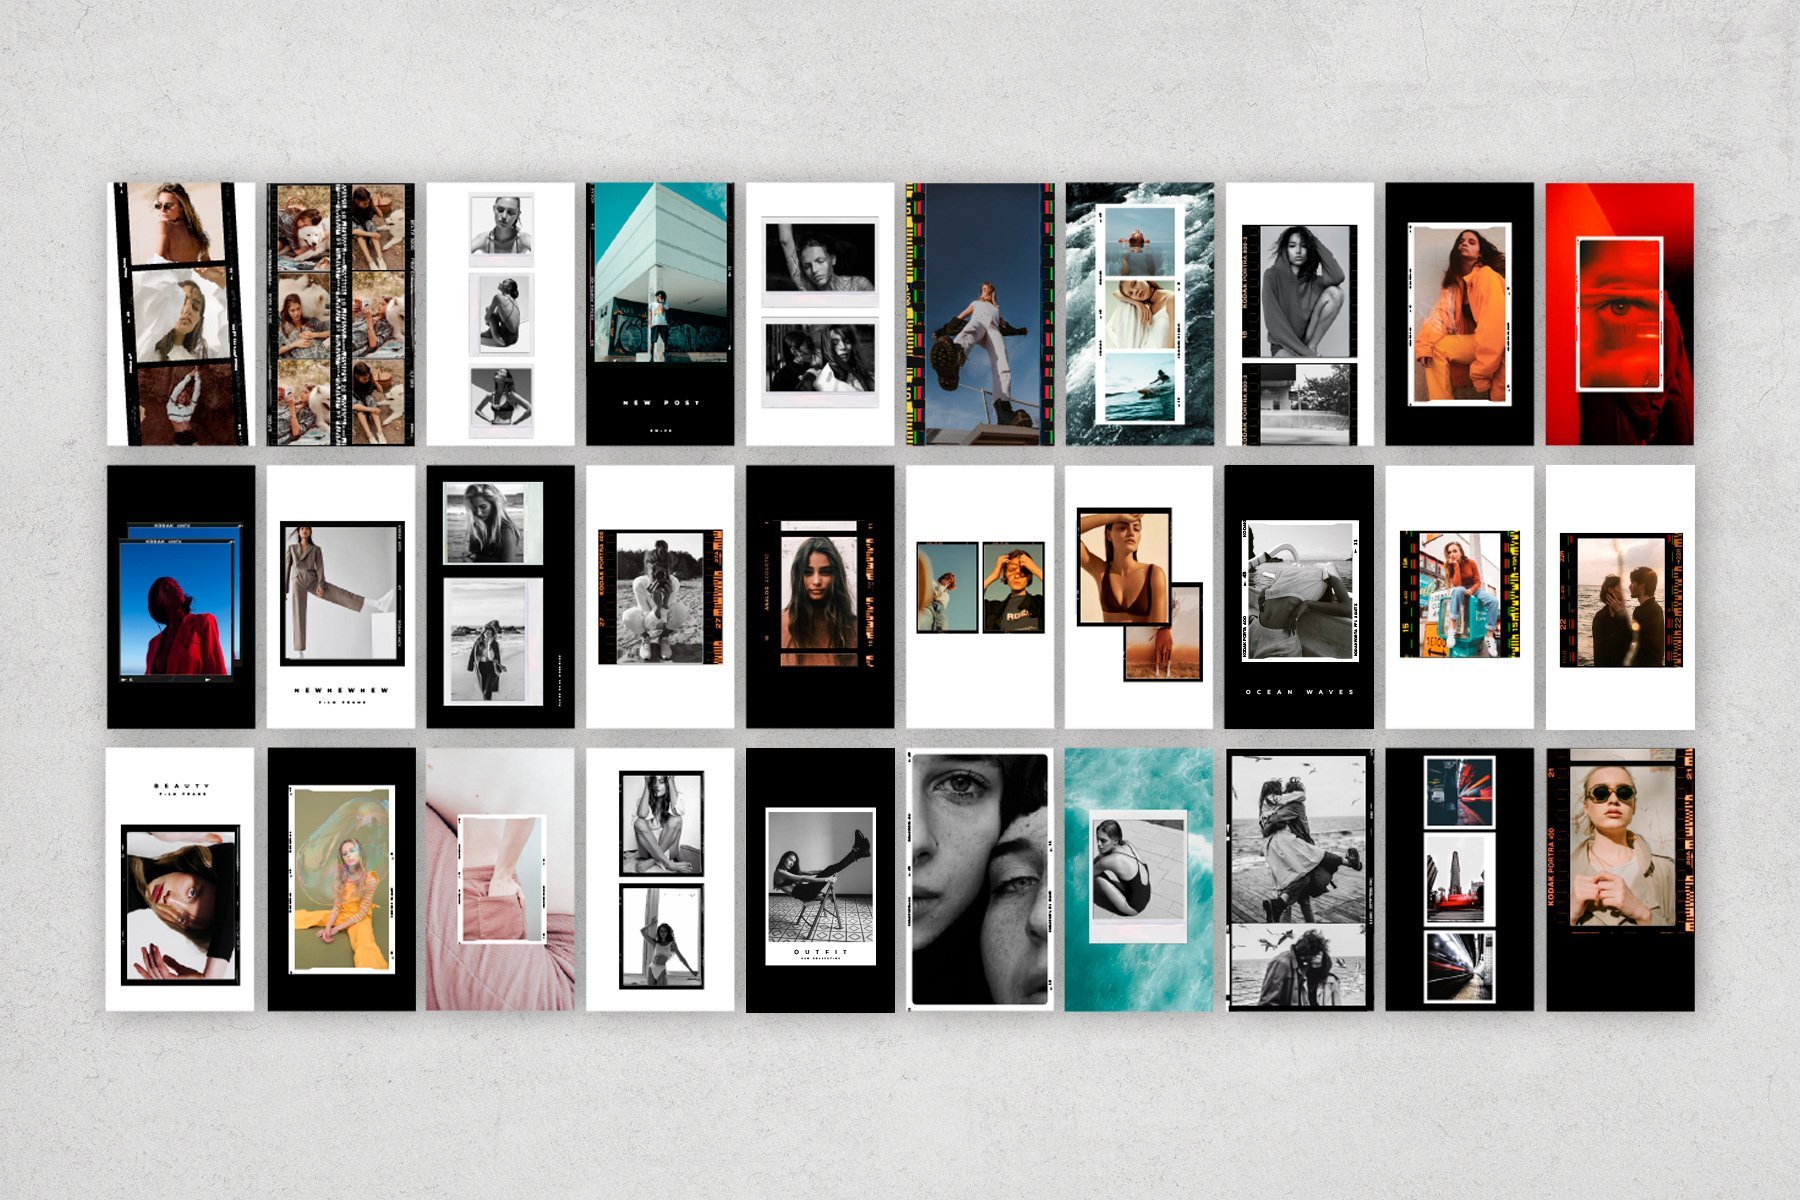 Kino - 110 Film Frames & Instant Instagram Stories